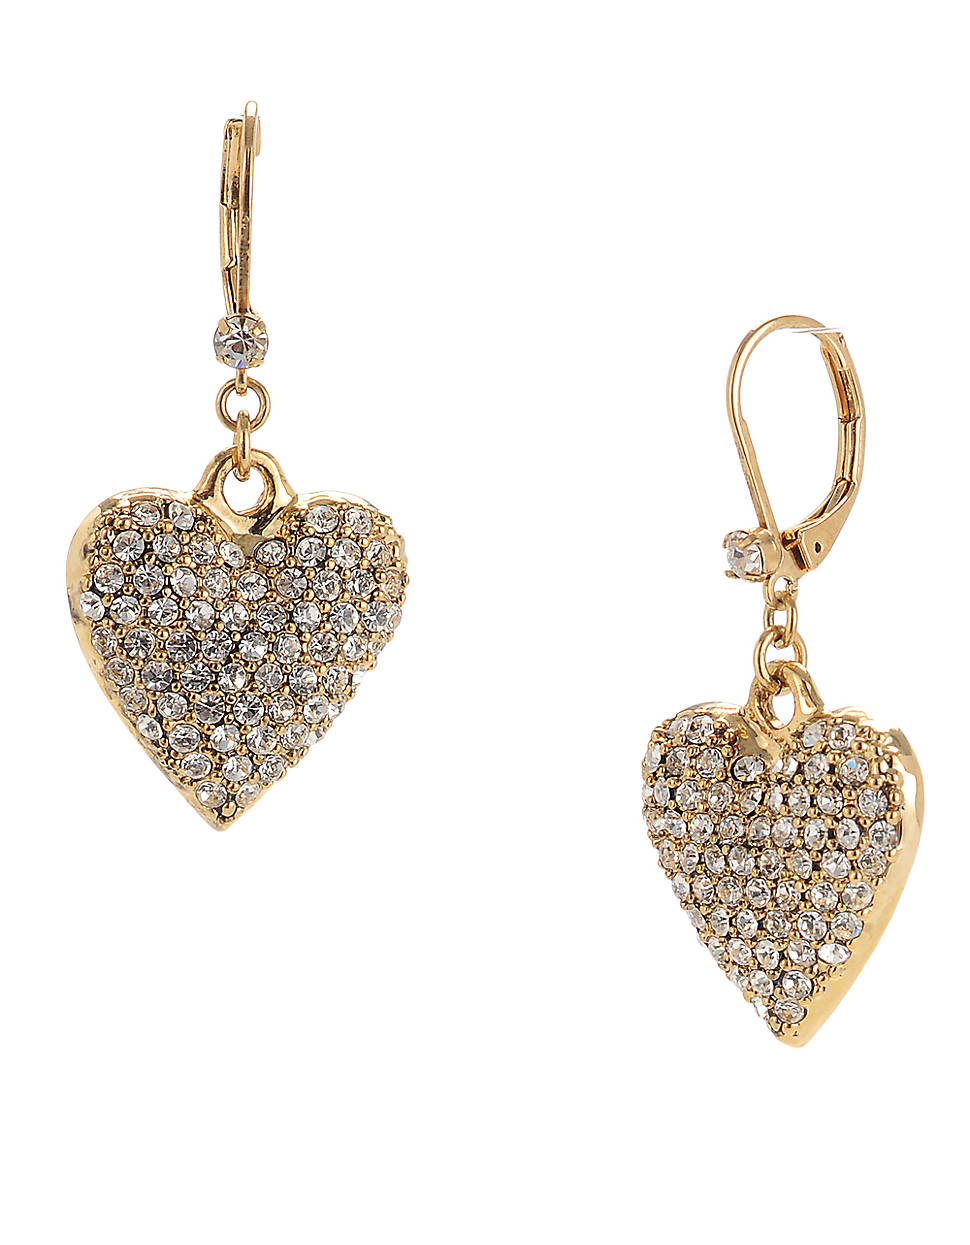 Lyst - Betsey Johnson Crystal Heart Drop Earrings in Metallic